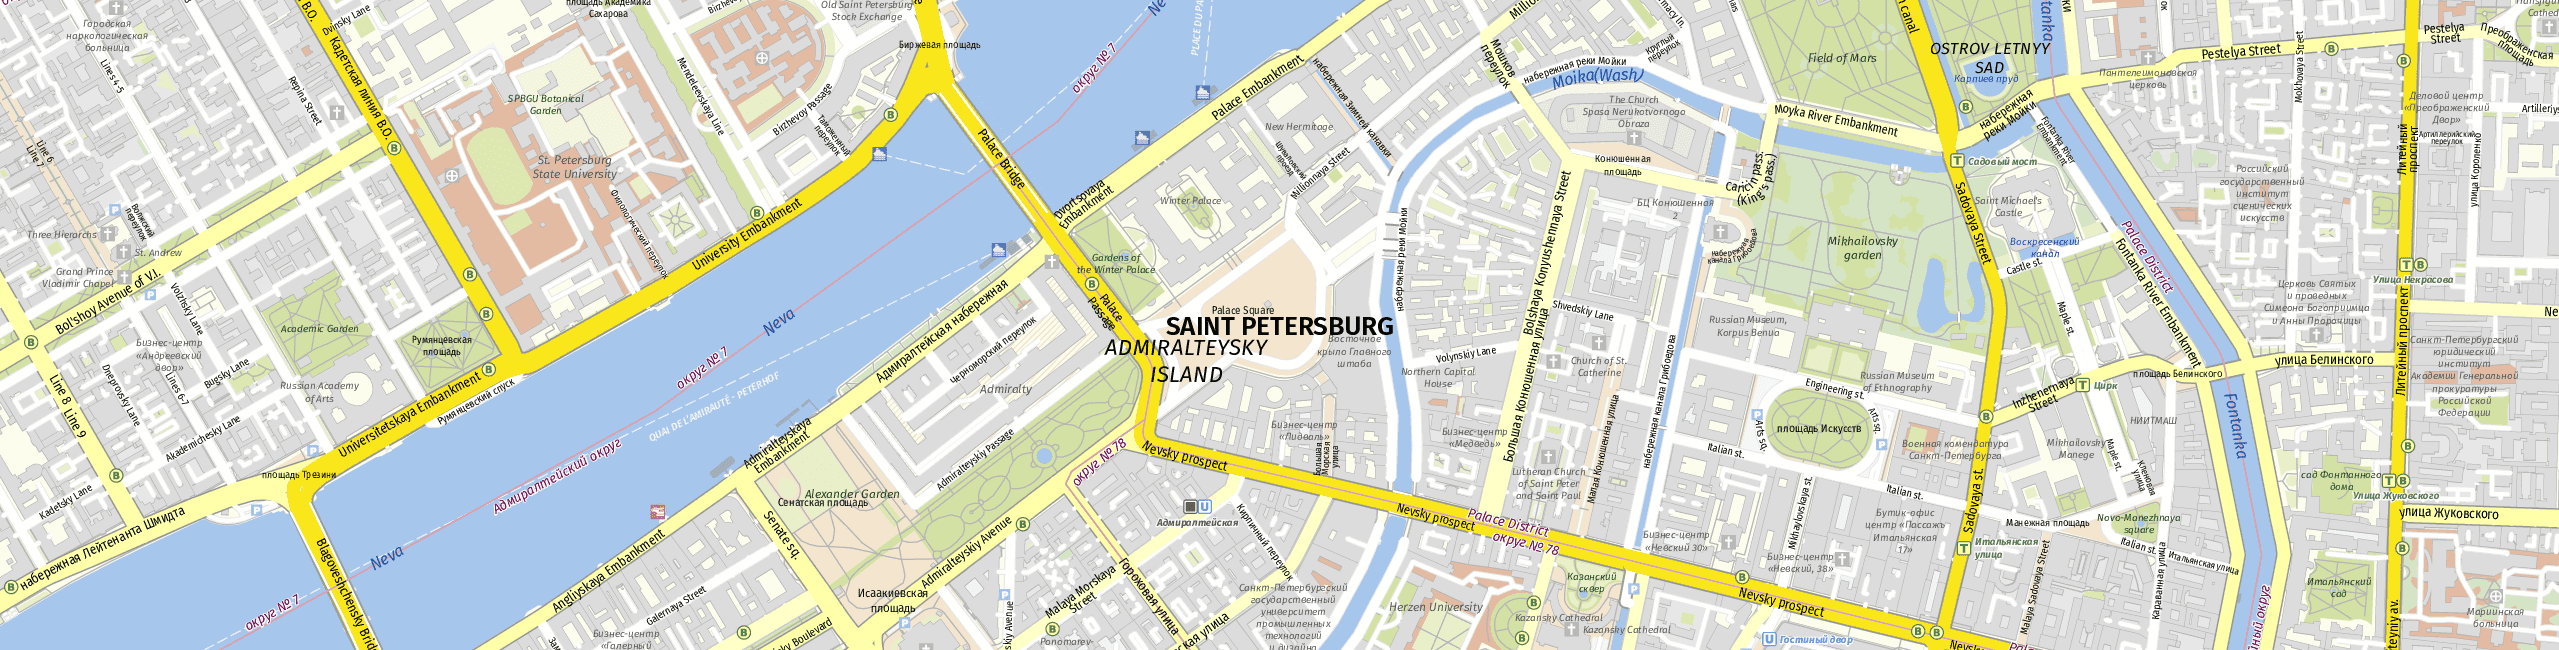 Stadtplan Saint Petersburg zum Downloaden.